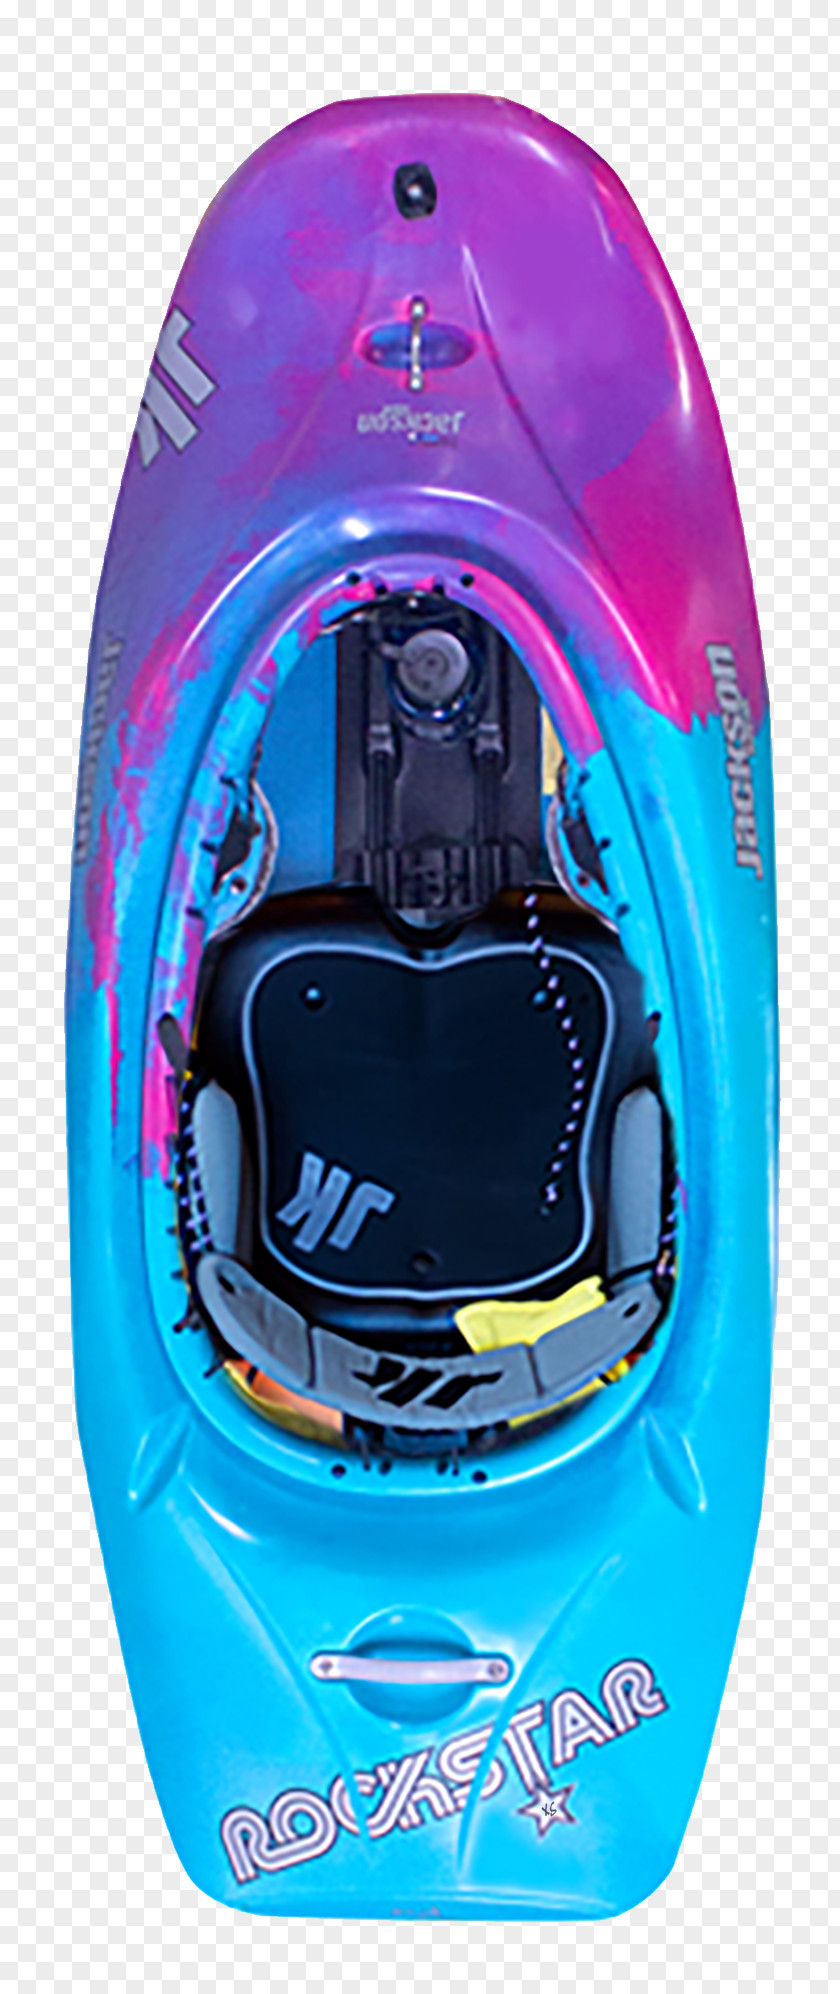 Playboating Jackson Kayak, Inc. Rockstar Games Helmet Purple PNG